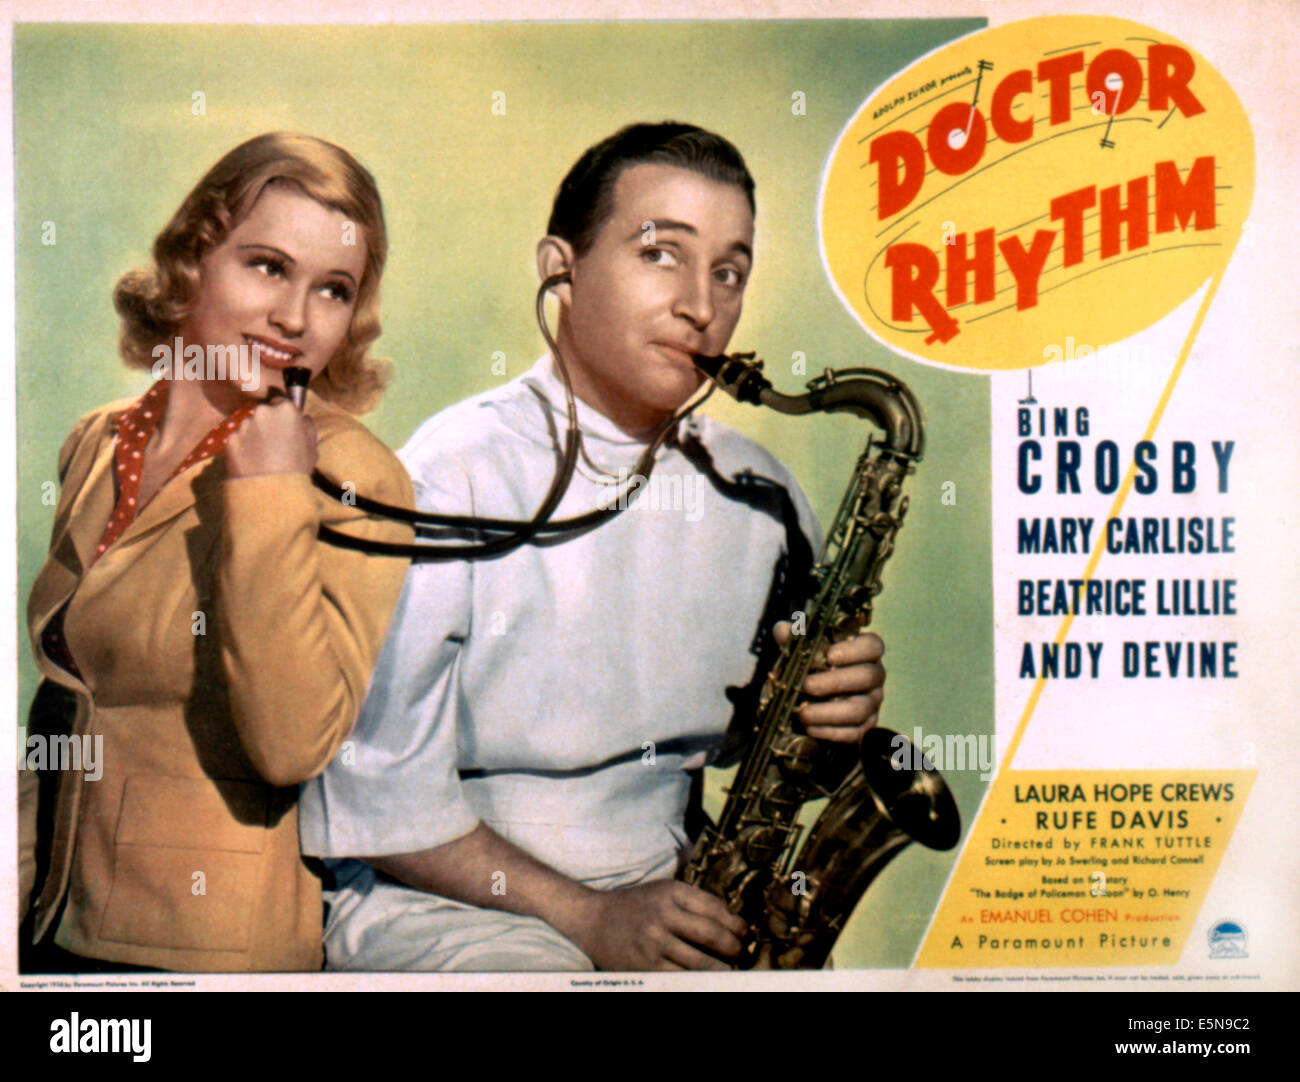 DR. RHYTHM, Mary Carlisle, Bing Crosby, 1938 Stock Photo